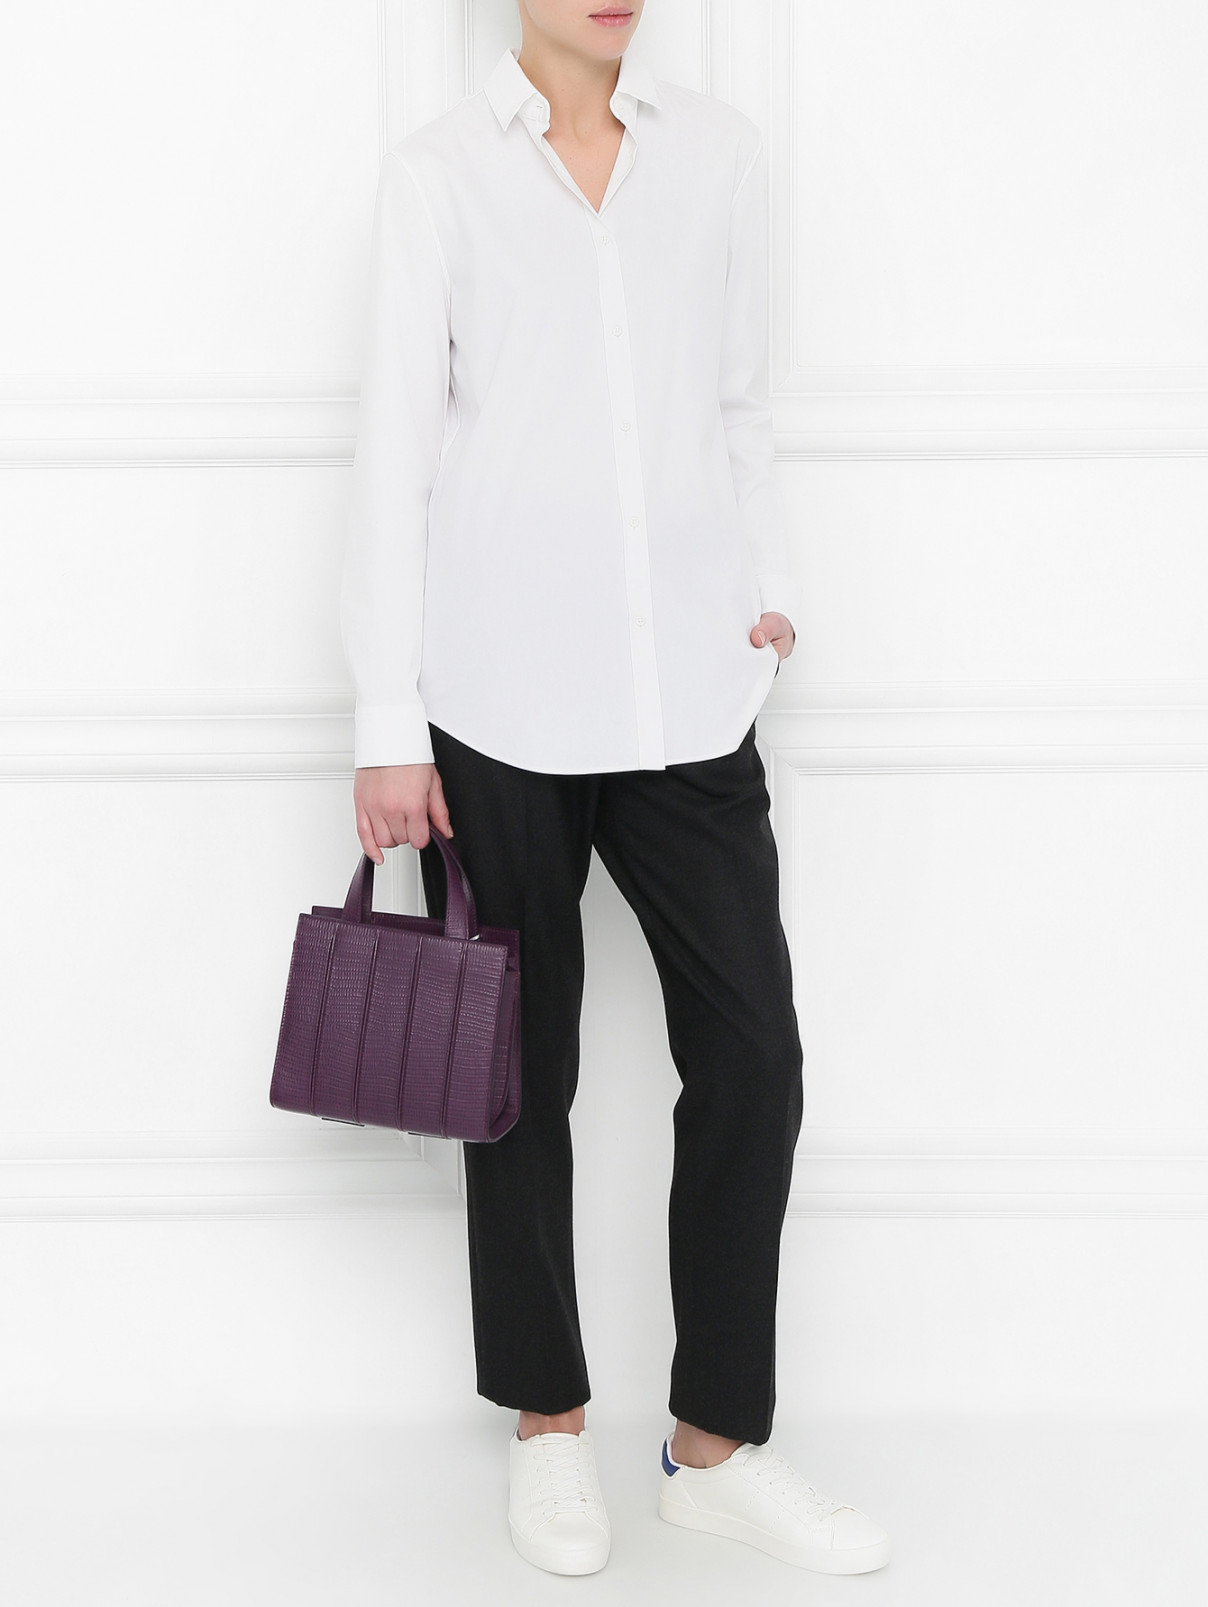 Рубашка из хлопка Jil Sander  –  Модель Общий вид  – Цвет:  Белый